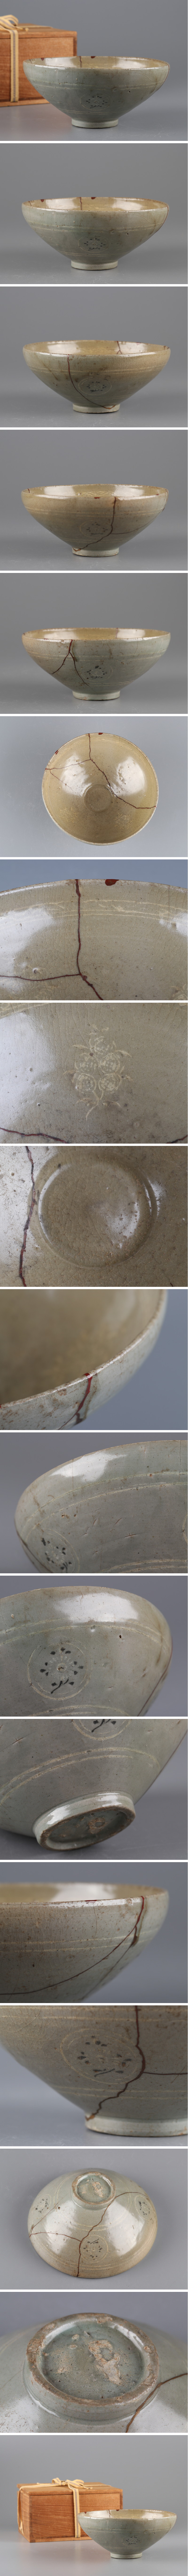 【通販最安】古美術 朝鮮古陶磁器 高麗青磁 白黒象嵌 鉢 時代物 極上品 初だし品 4693 高麗